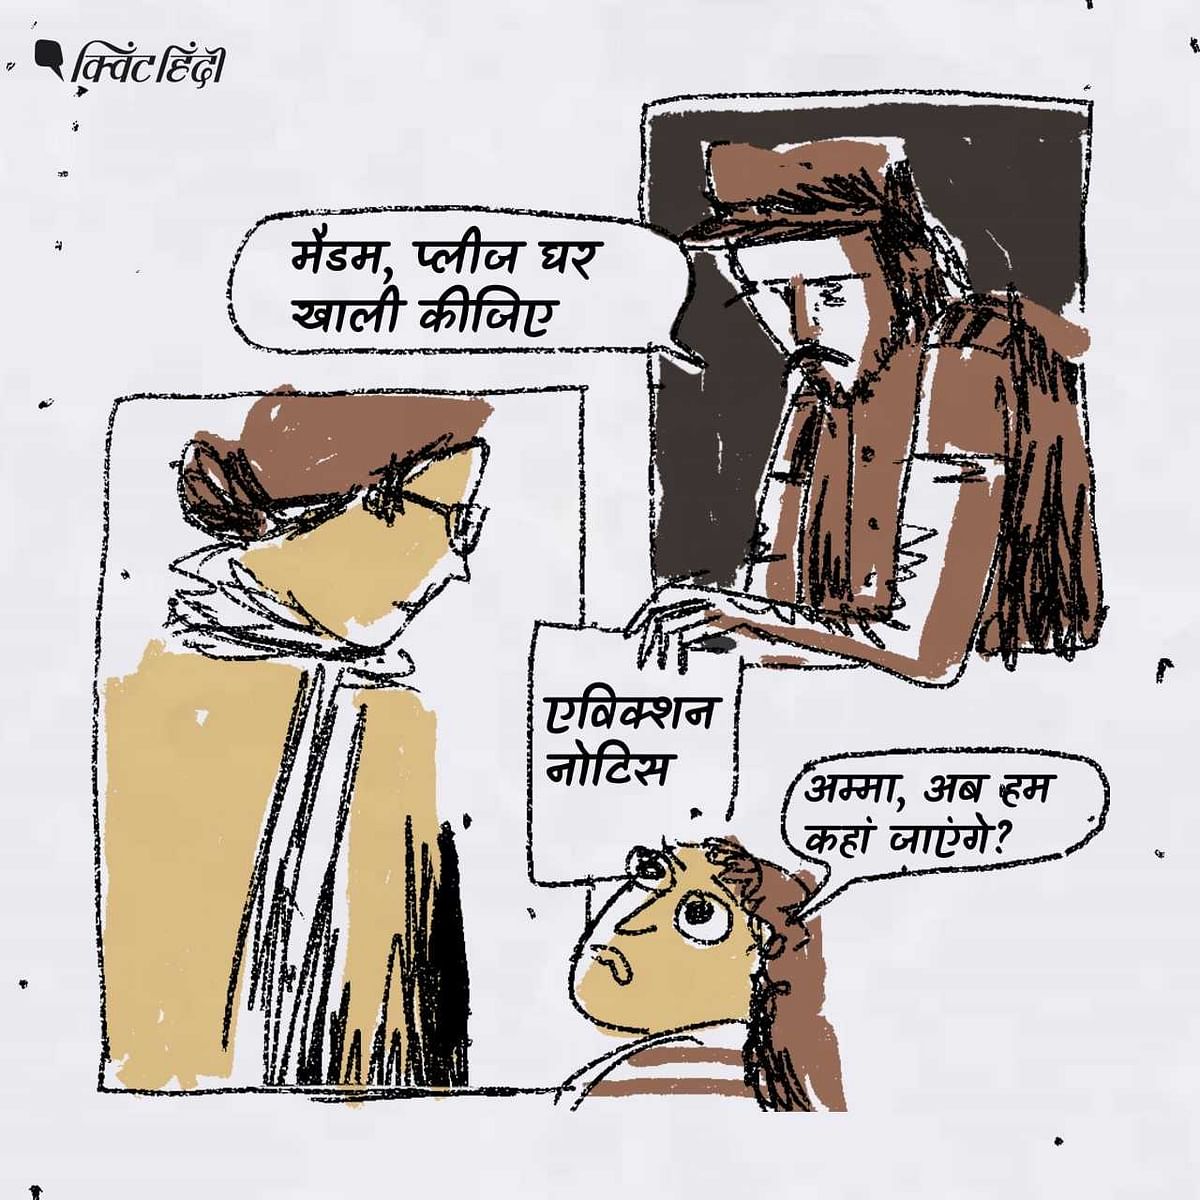 कठुआ मामले के एक साल बाद वकील दीपिका सिंह राजावत की जिंदगी में उतार-चढ़ाव जारी है.